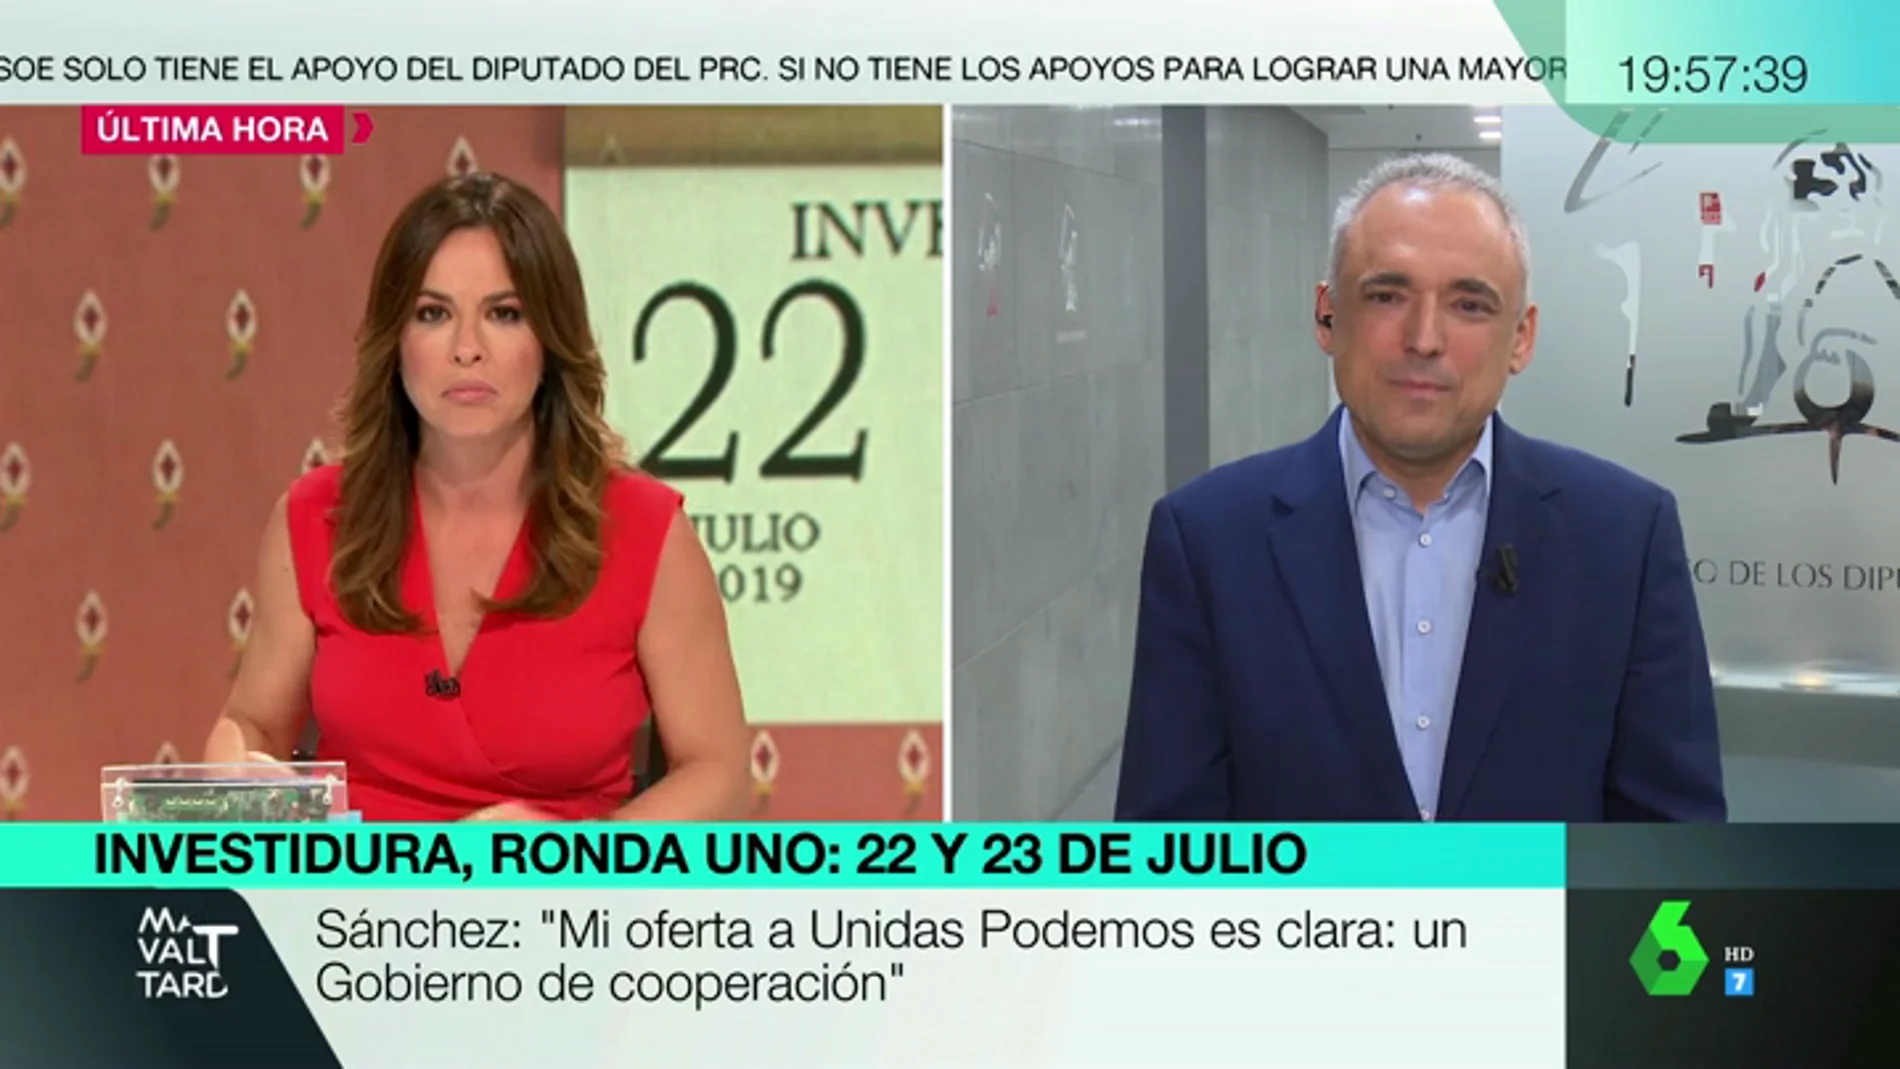 Rafael Simancas (PSOE): "No nos podemos ir de vacaciones sin resolver la conformación del Gobierno"